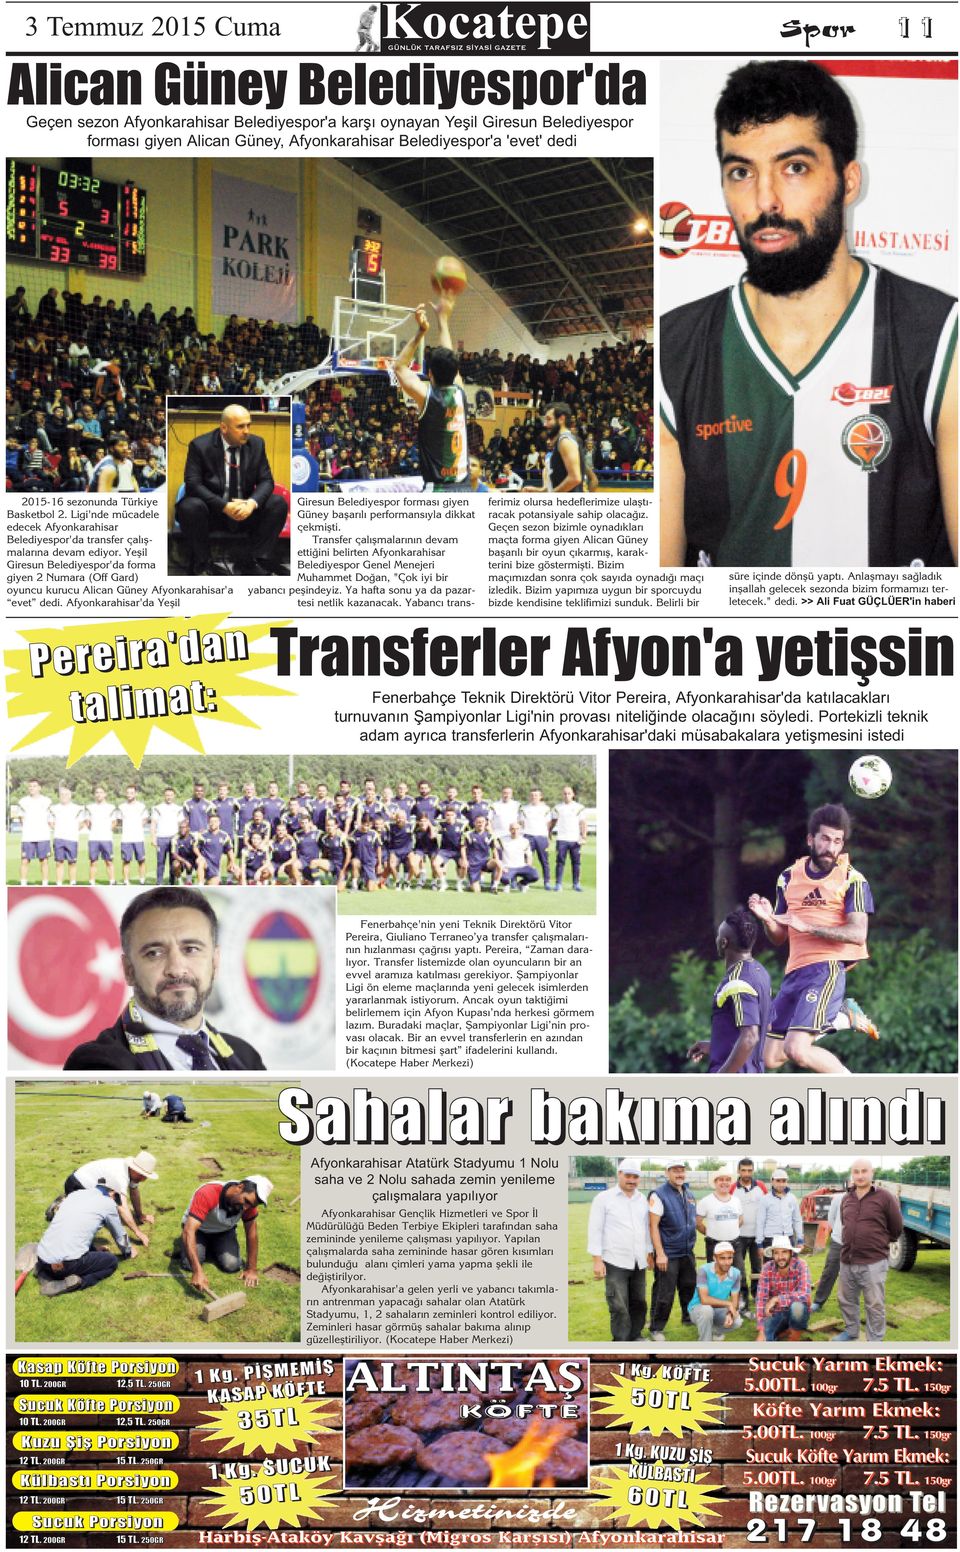 Yeşil Giresun Belediyespor'da forma giyen 2 Numara (Off Gard) oyuncu kurucu Alican Güney Afyonkarahisar'a evet dedi.